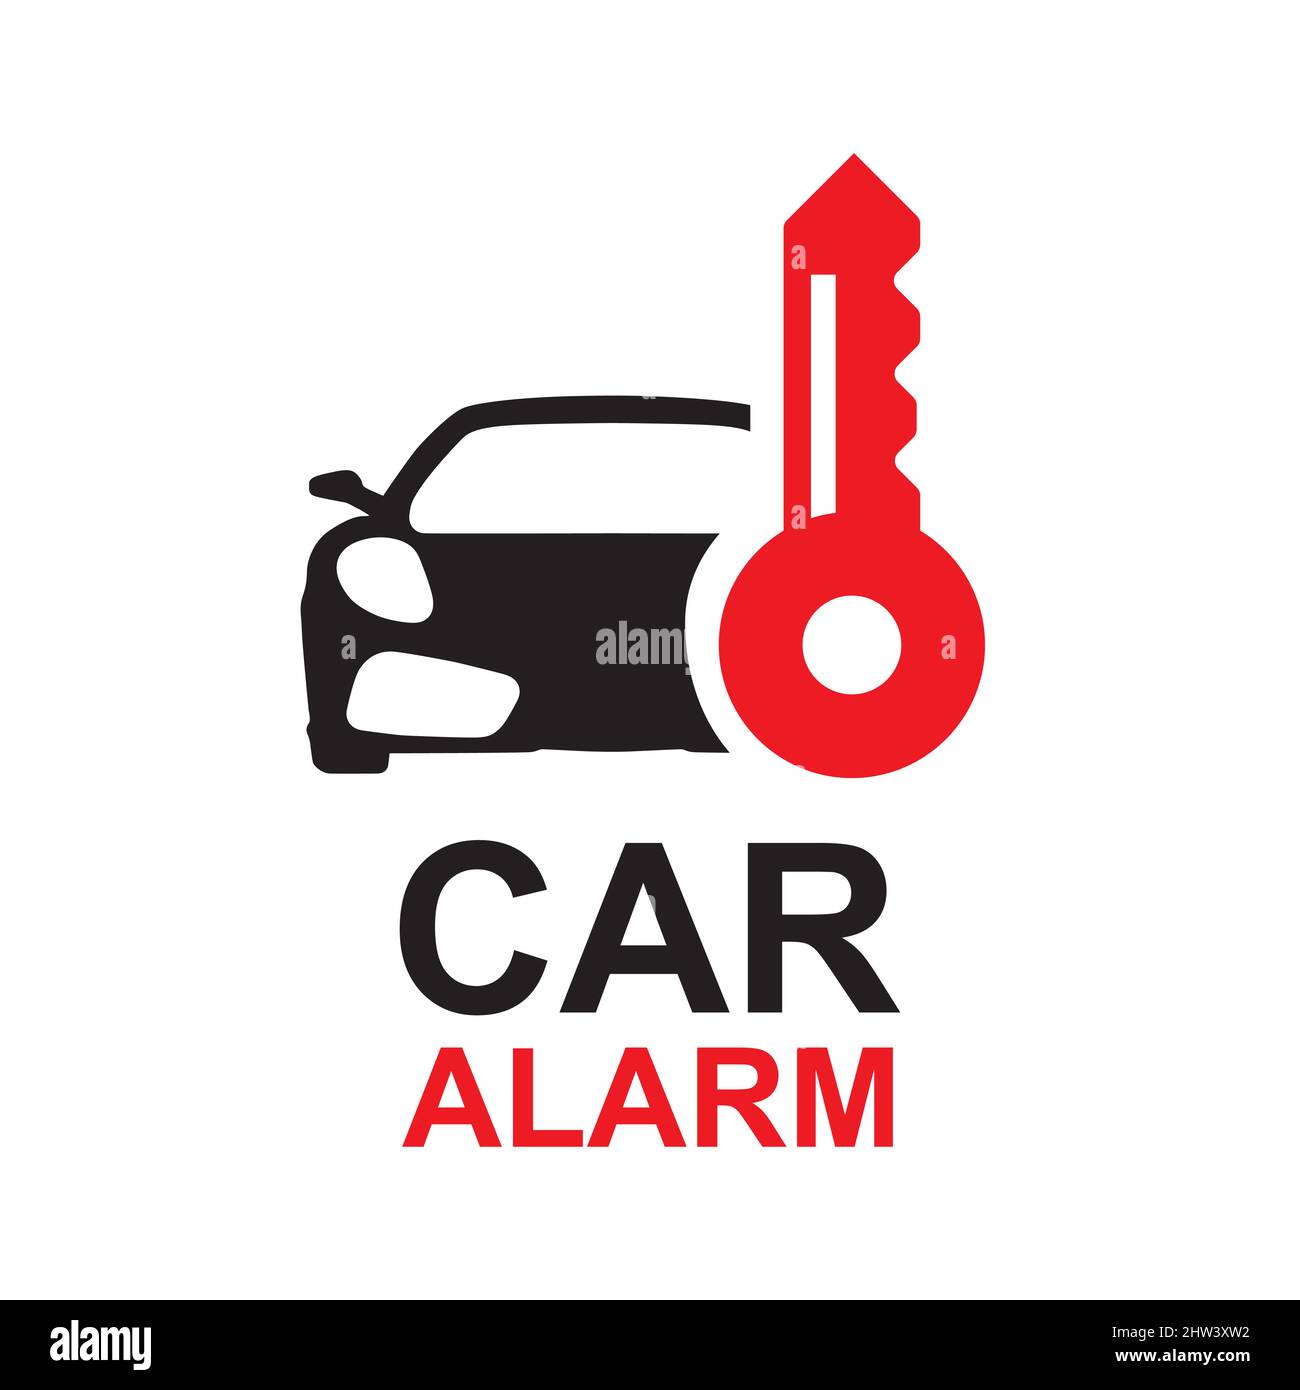 logo vettoriale del servizio di installazione allarme auto Immagine e  Vettoriale - Alamy